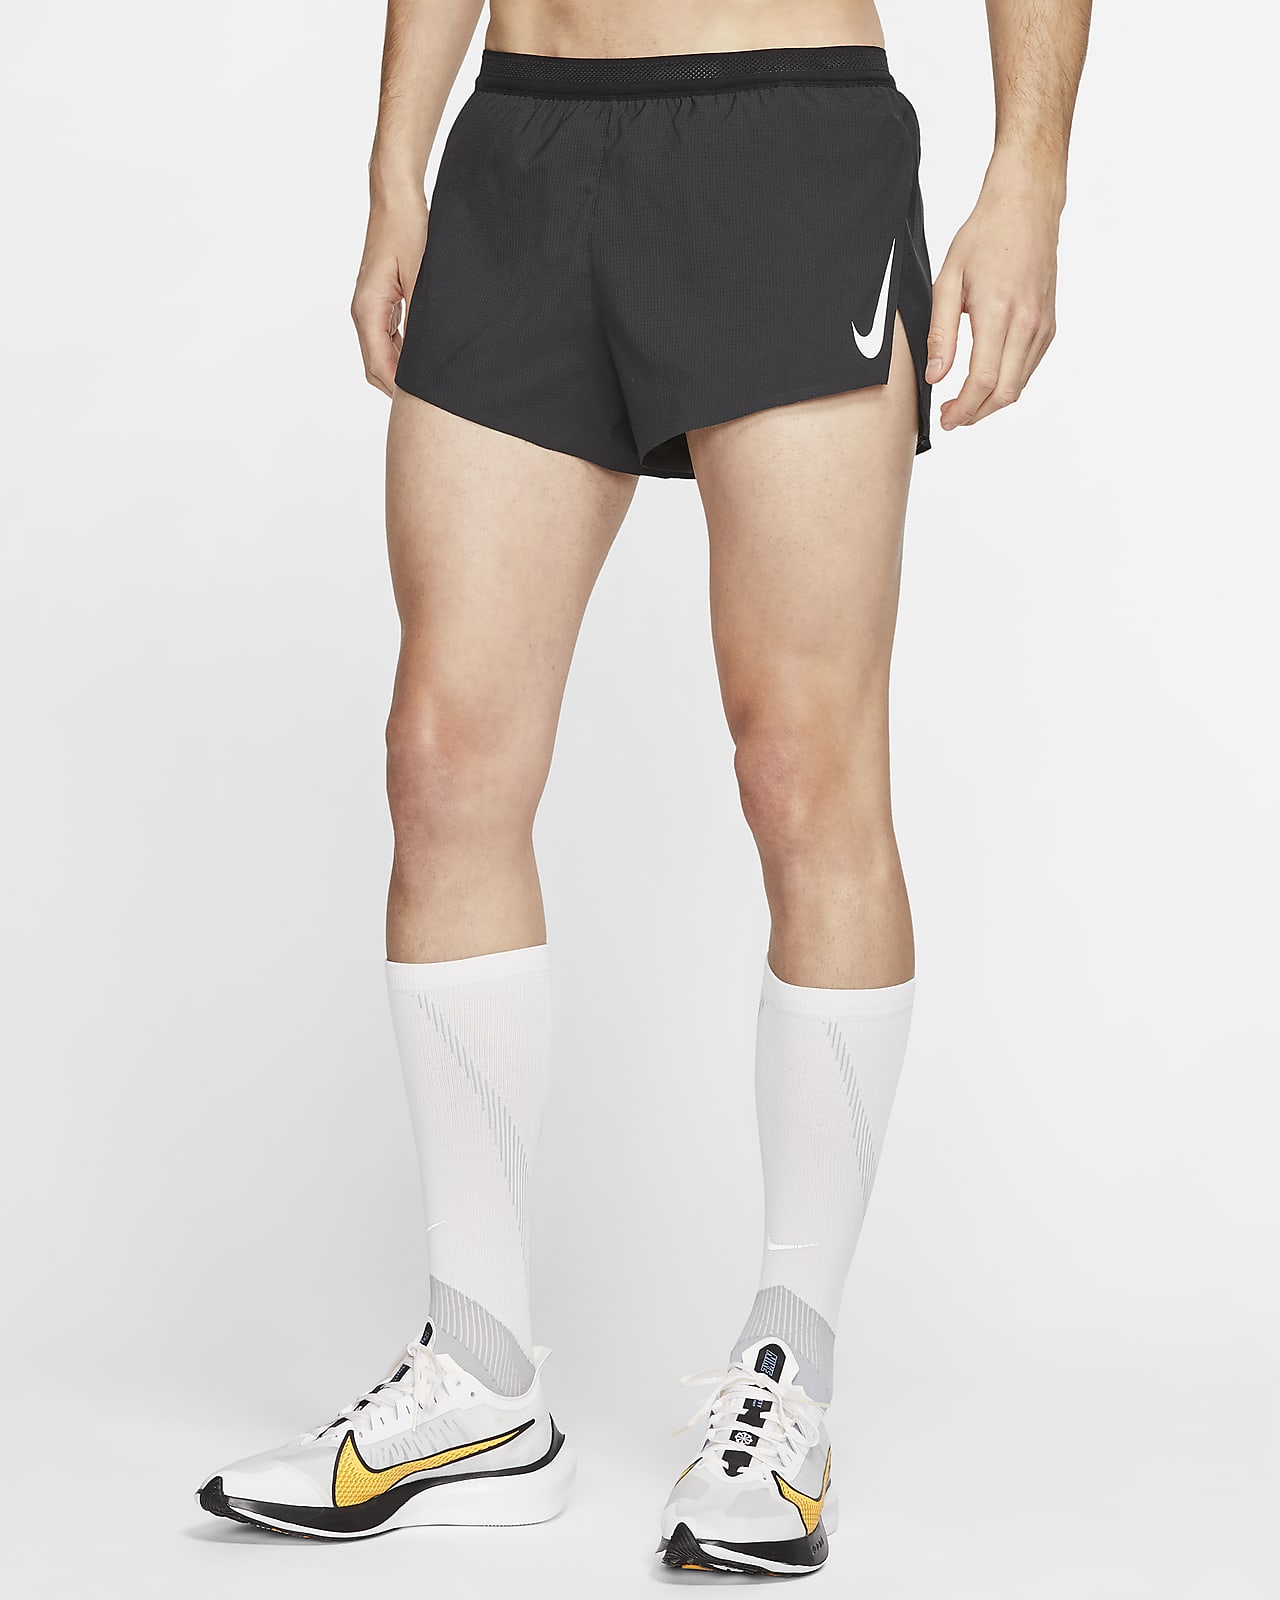 Nike AeroSwift corto competición de 5 cm con malla interior - Hombre. ES